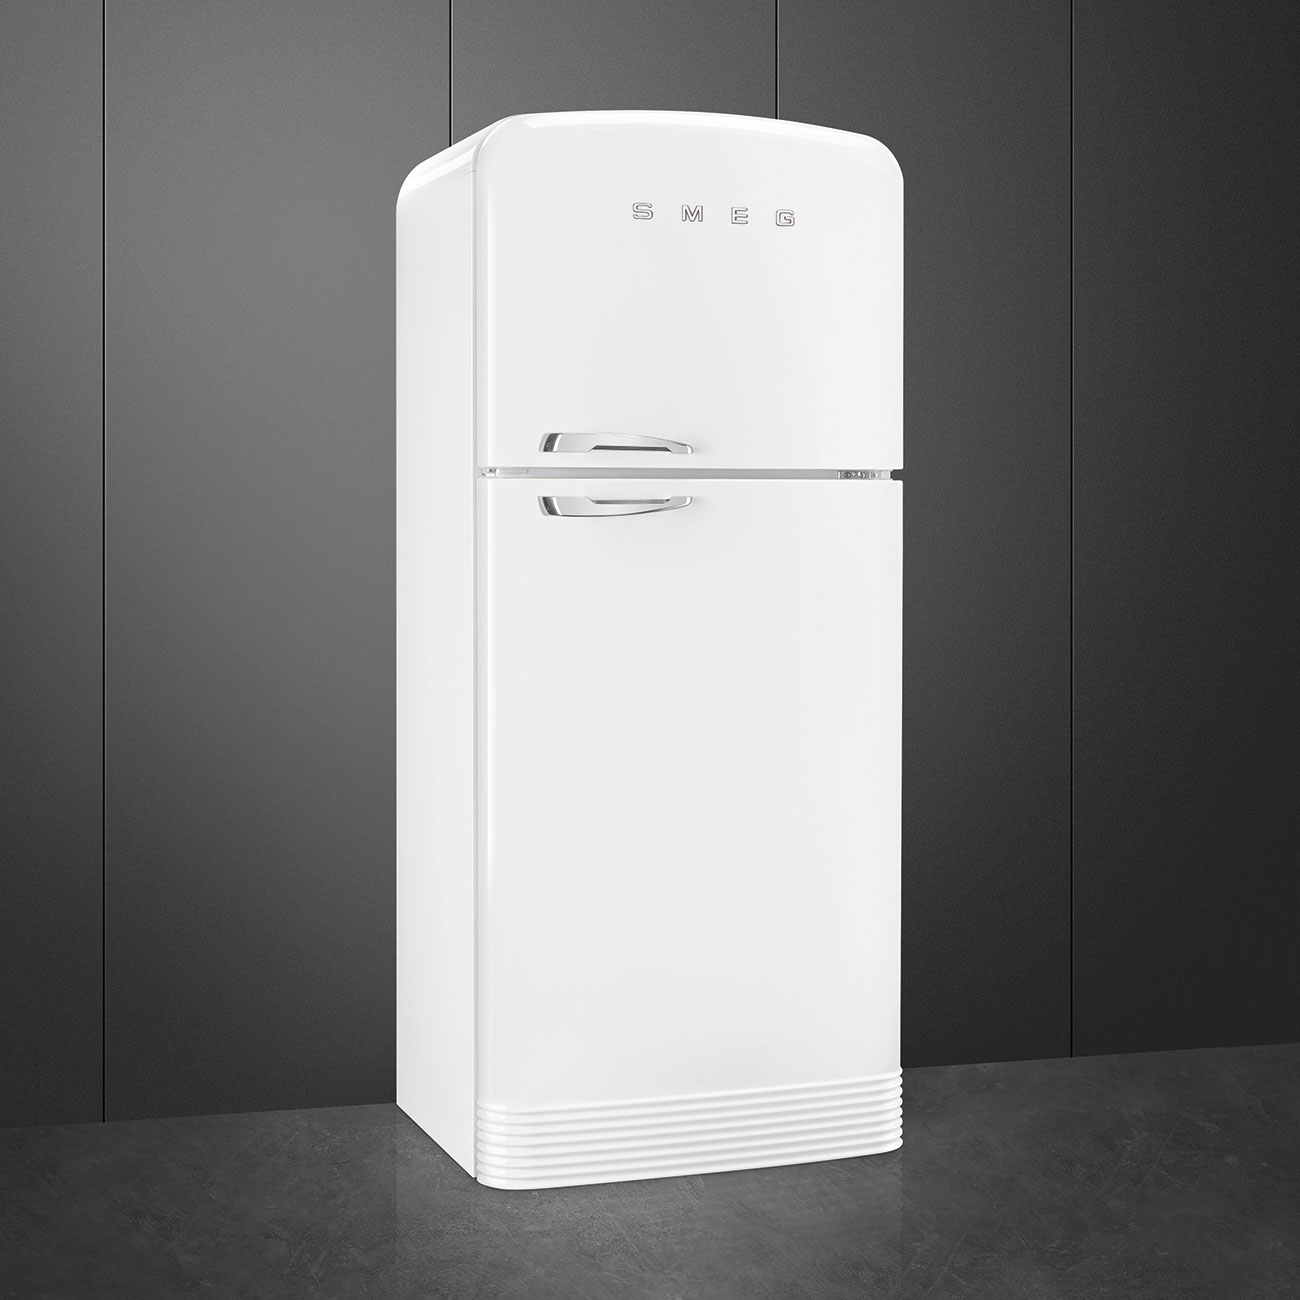 White refrigerator - Smeg_3